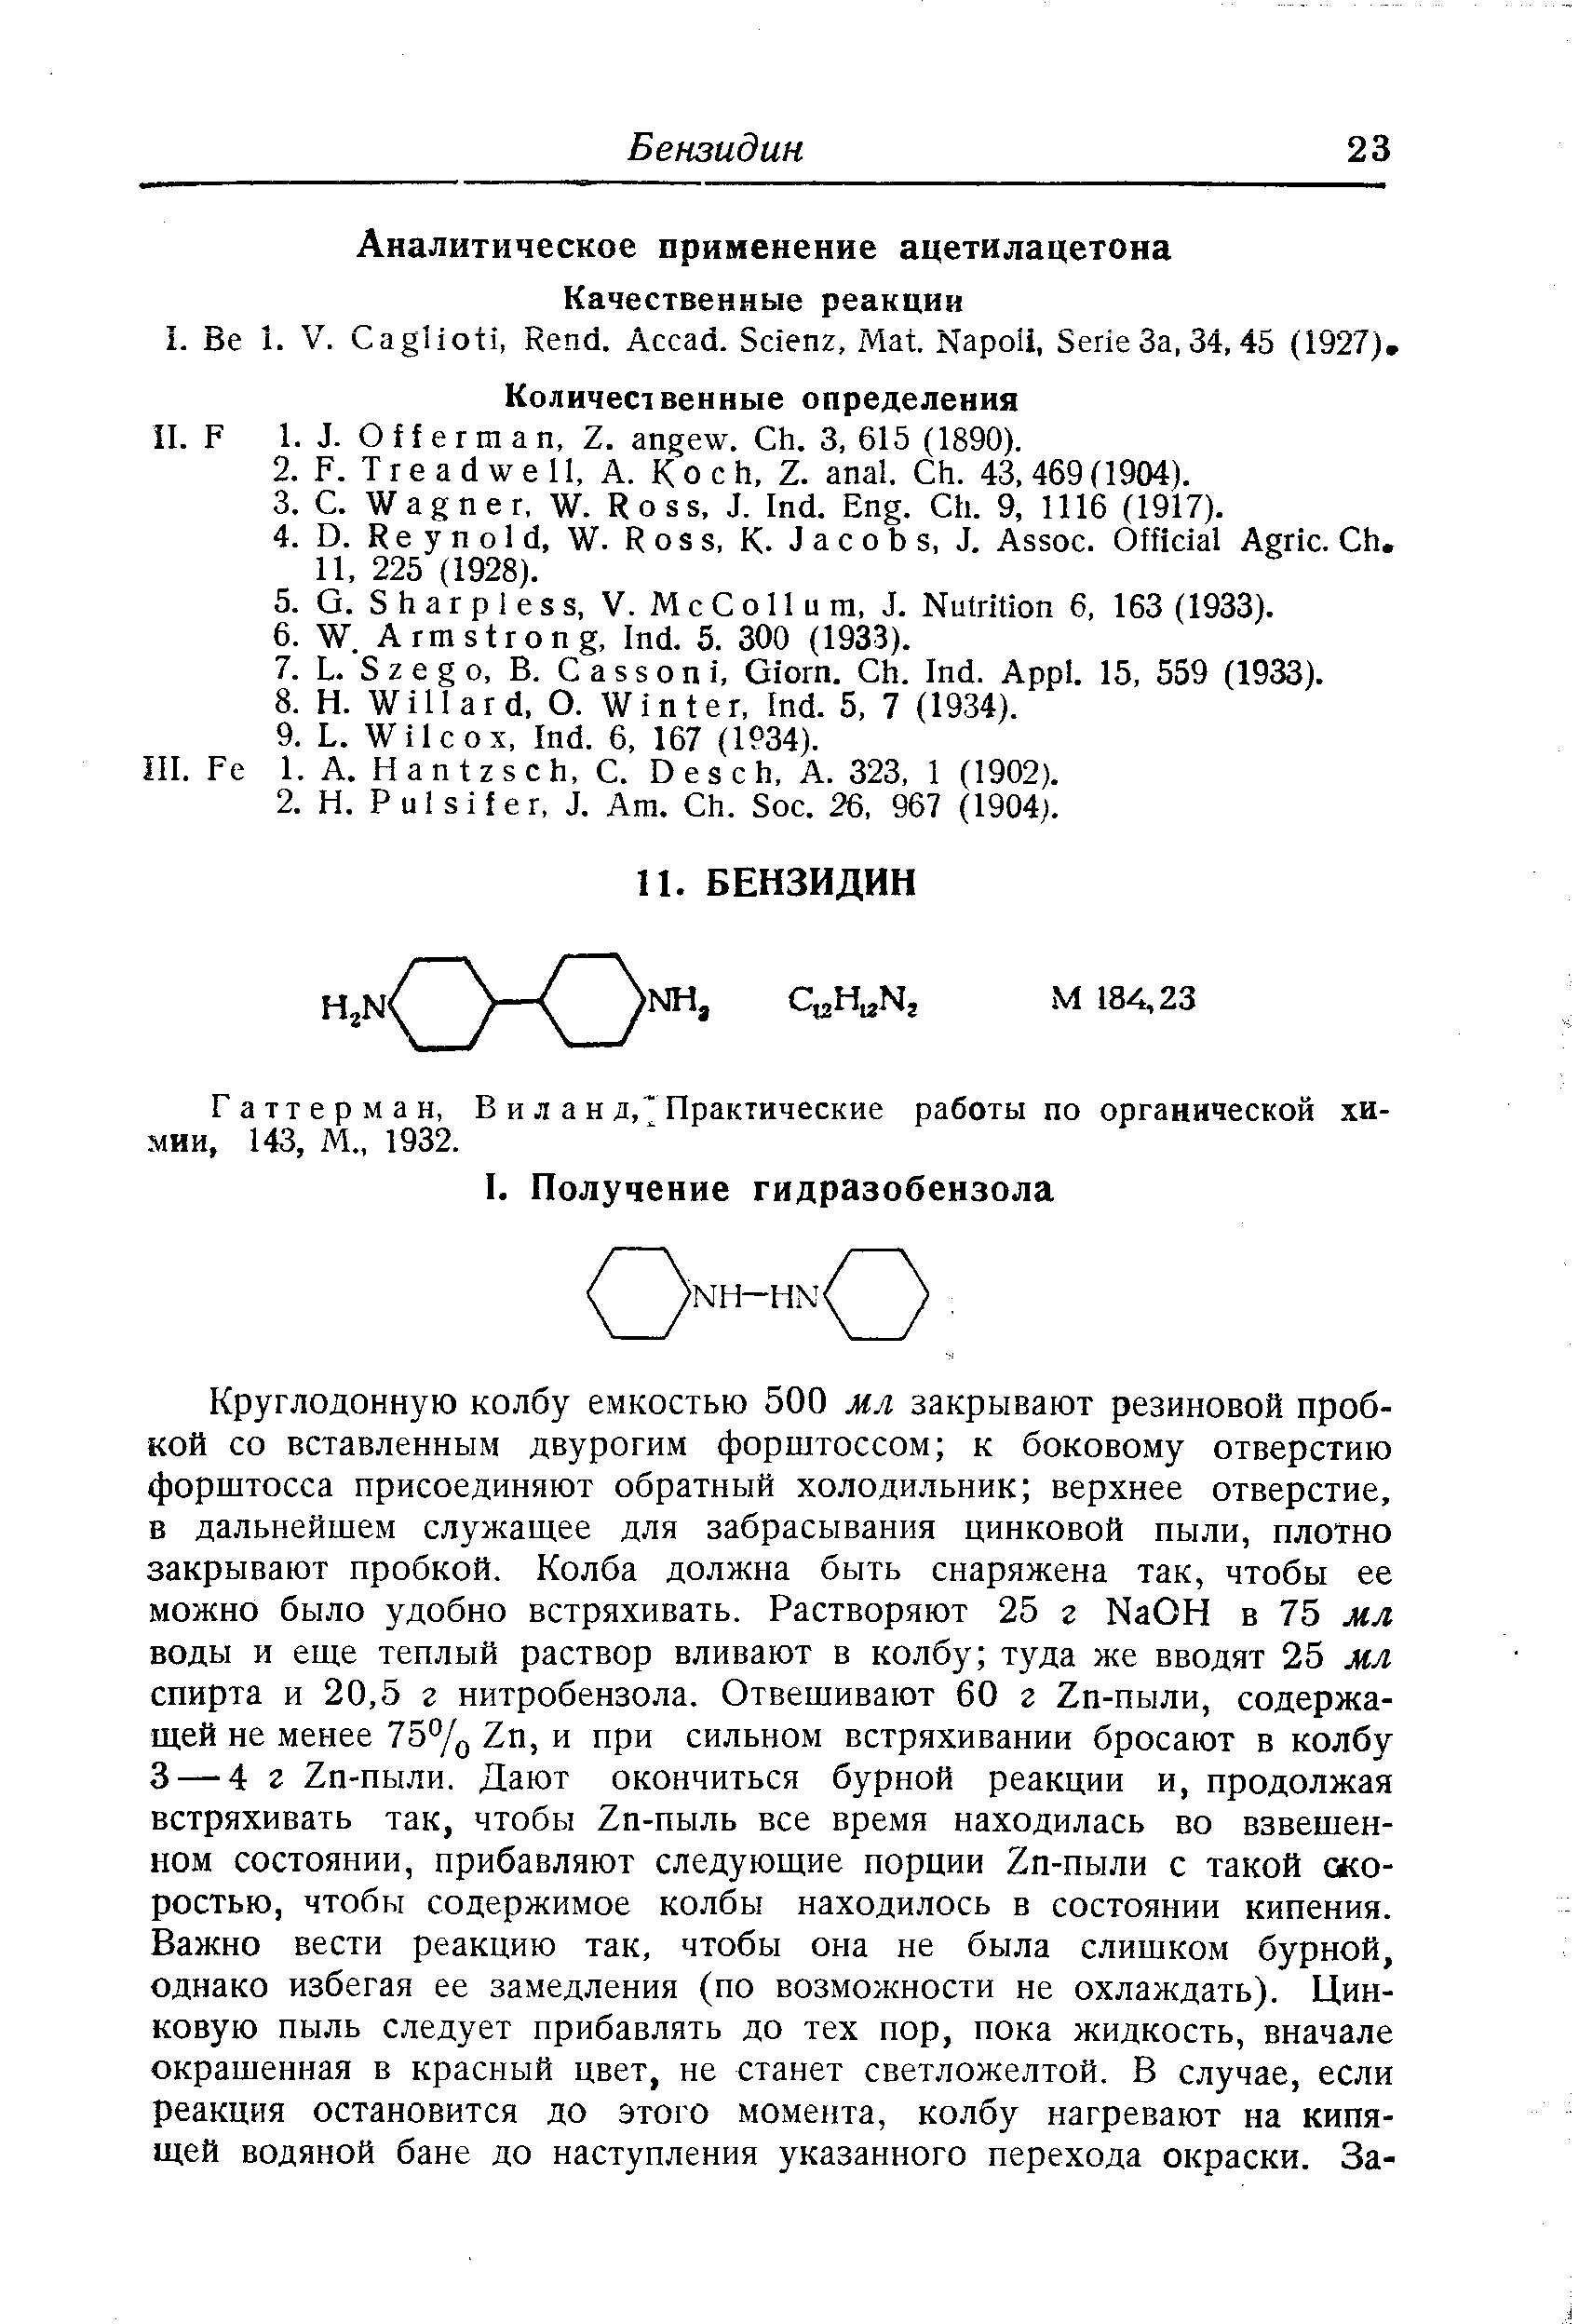 Гаттерман, В и л a н д, Практические работы по органической химии, 143, М., 1932.